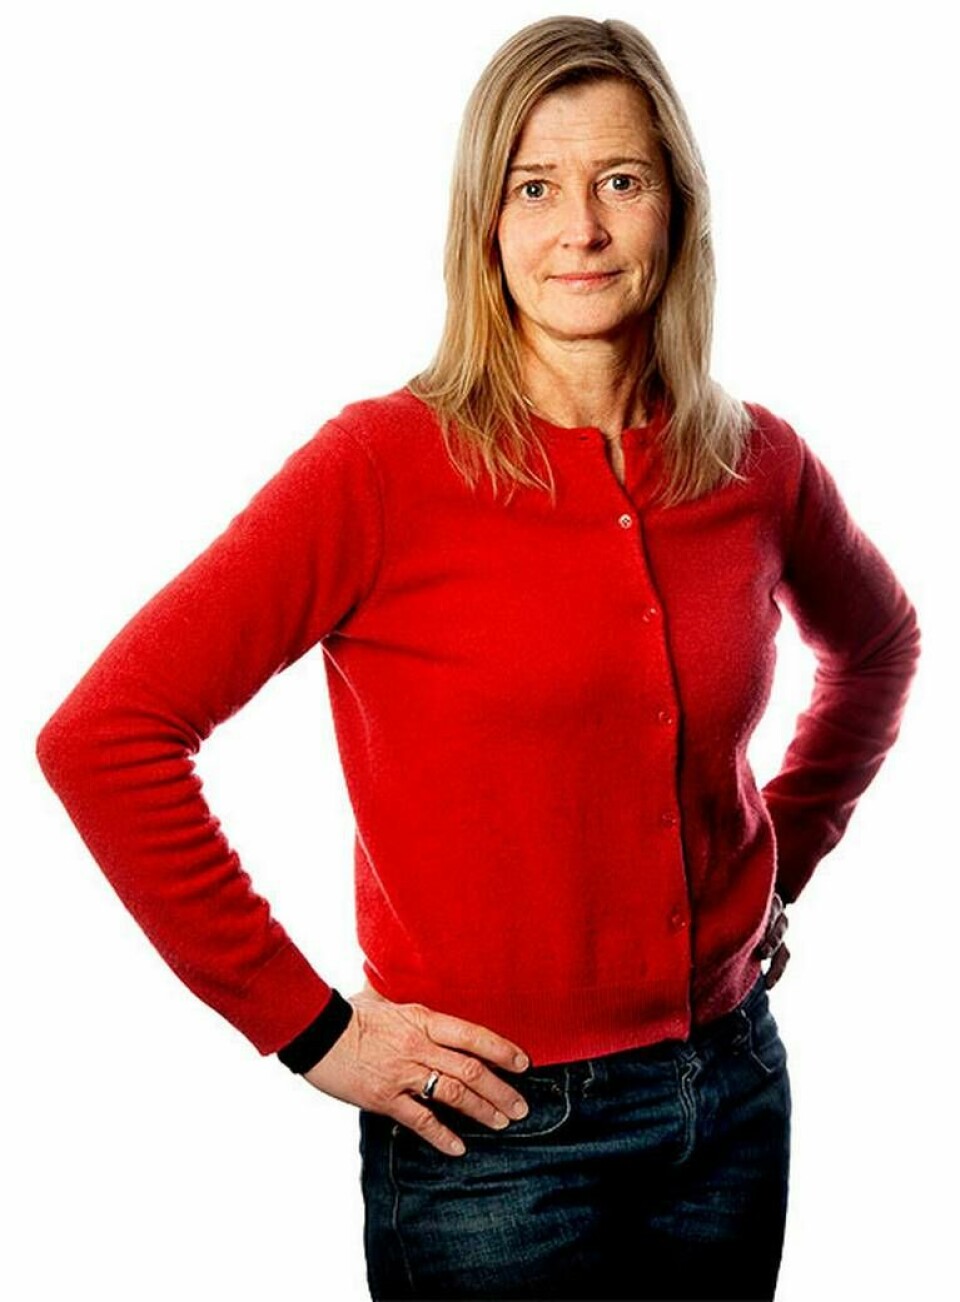 Susanna Baltscheffsky, chefredaktör för Ny Teknik.